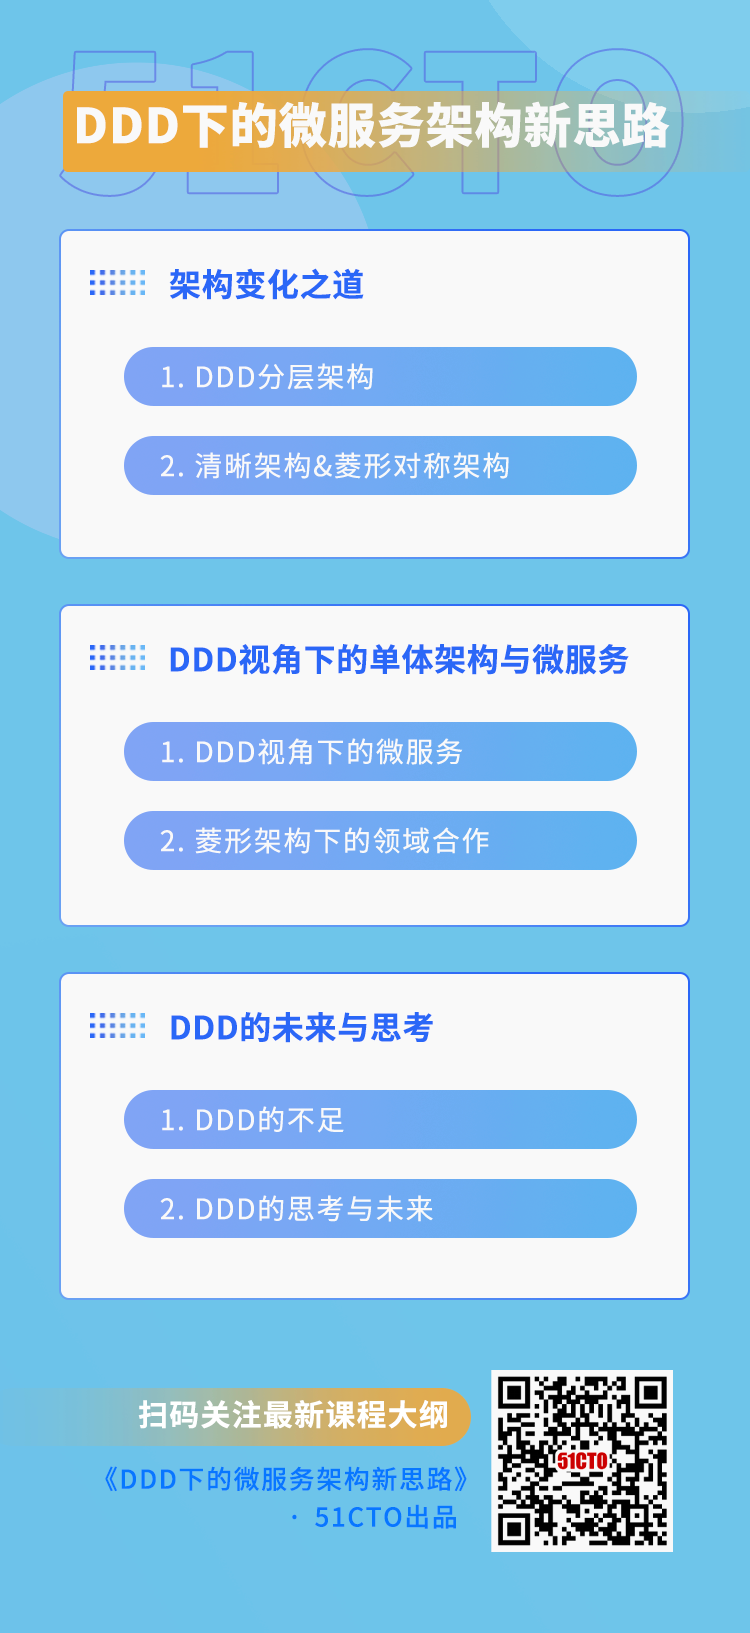 DDD下的微服务架构新思路 dagang.png